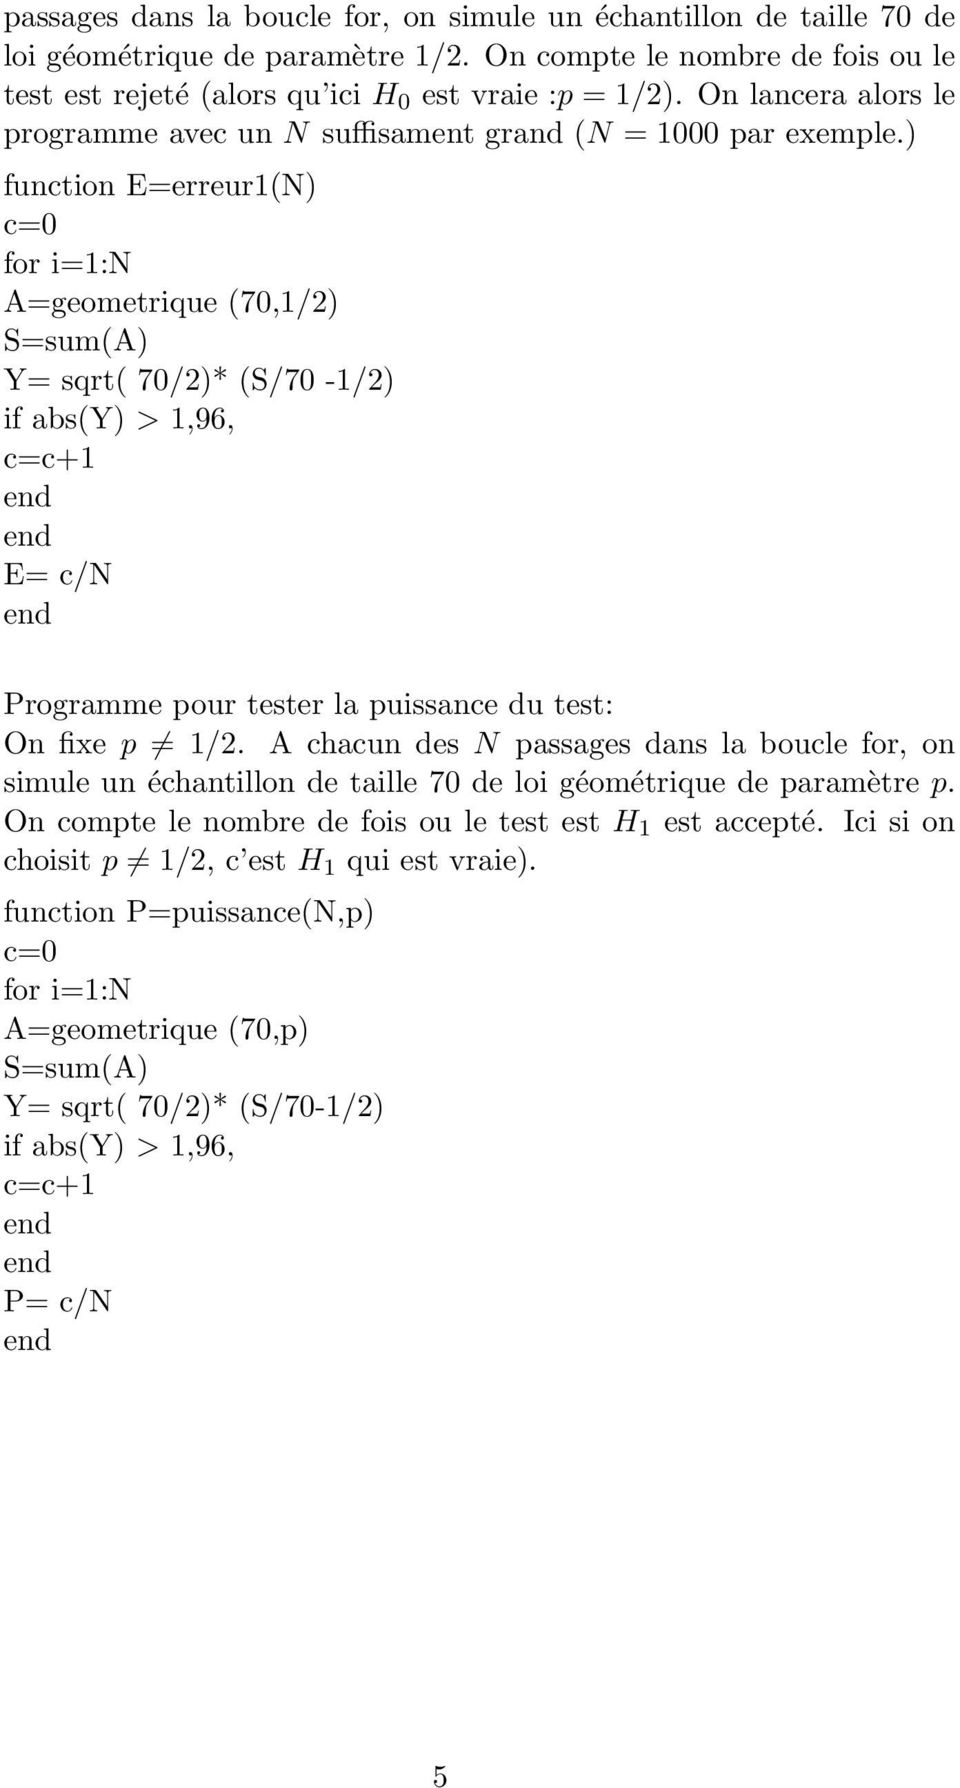 ) fuctio Eerreur(N) c0 for i:n Ageometrique (70,/) Ssum(A) Y sqrt( 70/)* (S/70 -/) if abs(y) >,96, cc+ E c/n Programme pour tester la puissace du test: O fixe p /.